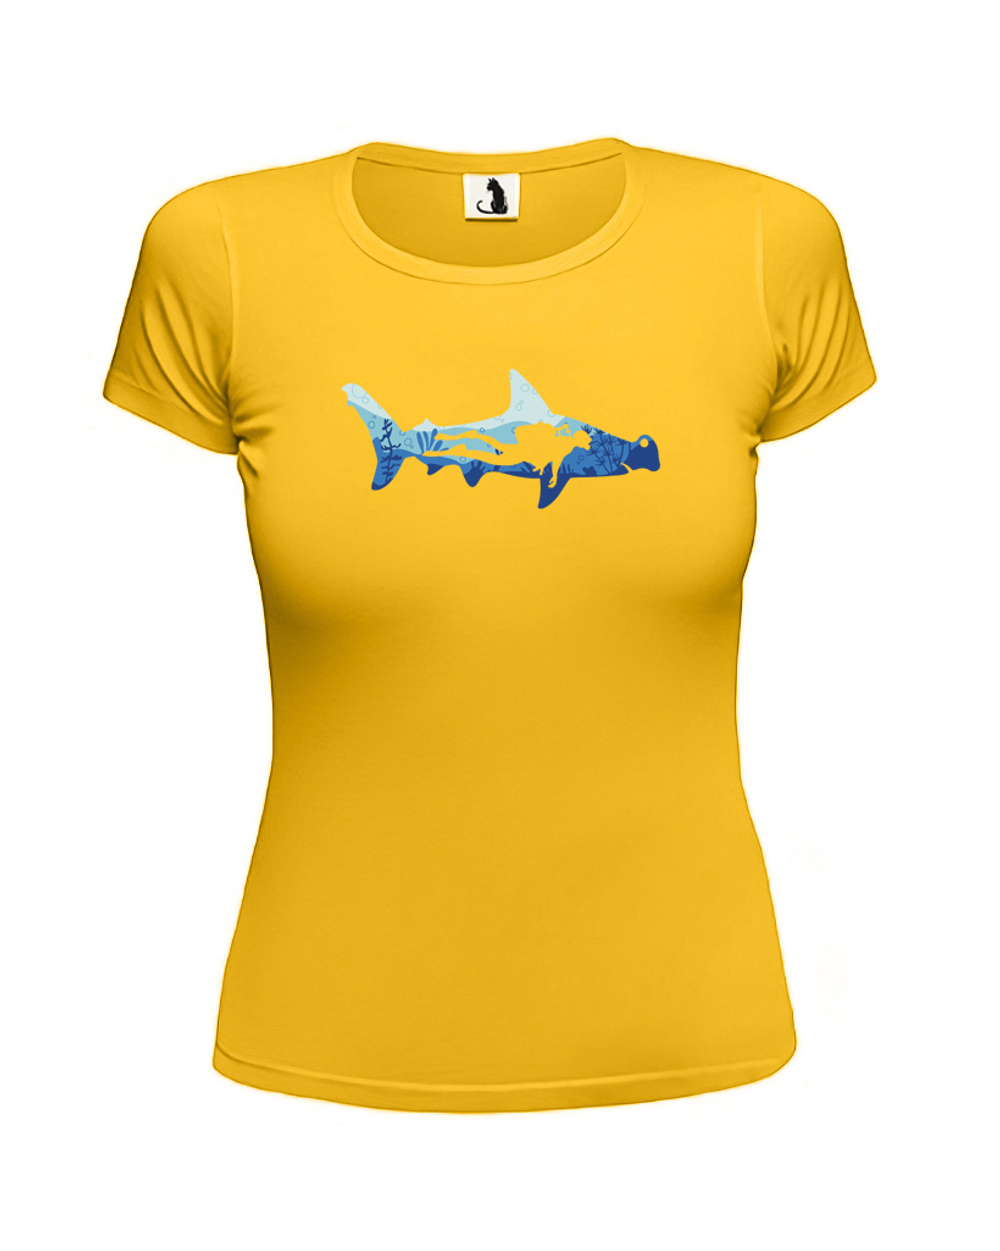 Футболка с акулой-молотом и водолазом женская приталенная желтая